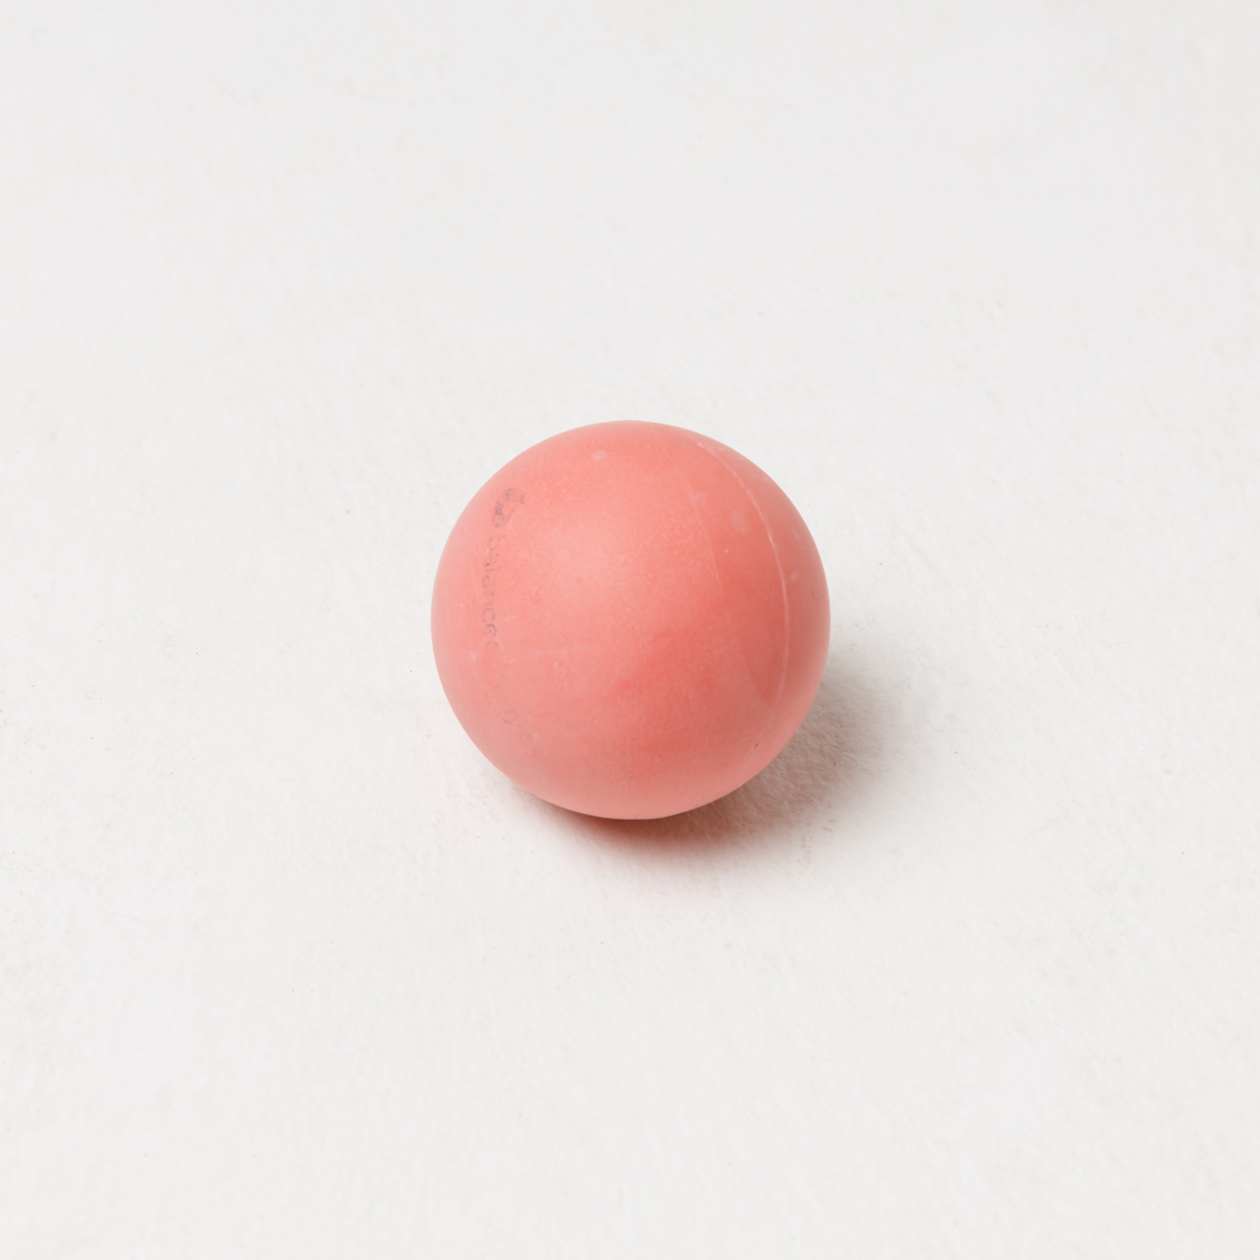 Массажные мячи изготавливают из резины или другого мягкого материала. Классический вариант размером с теннисный мяч